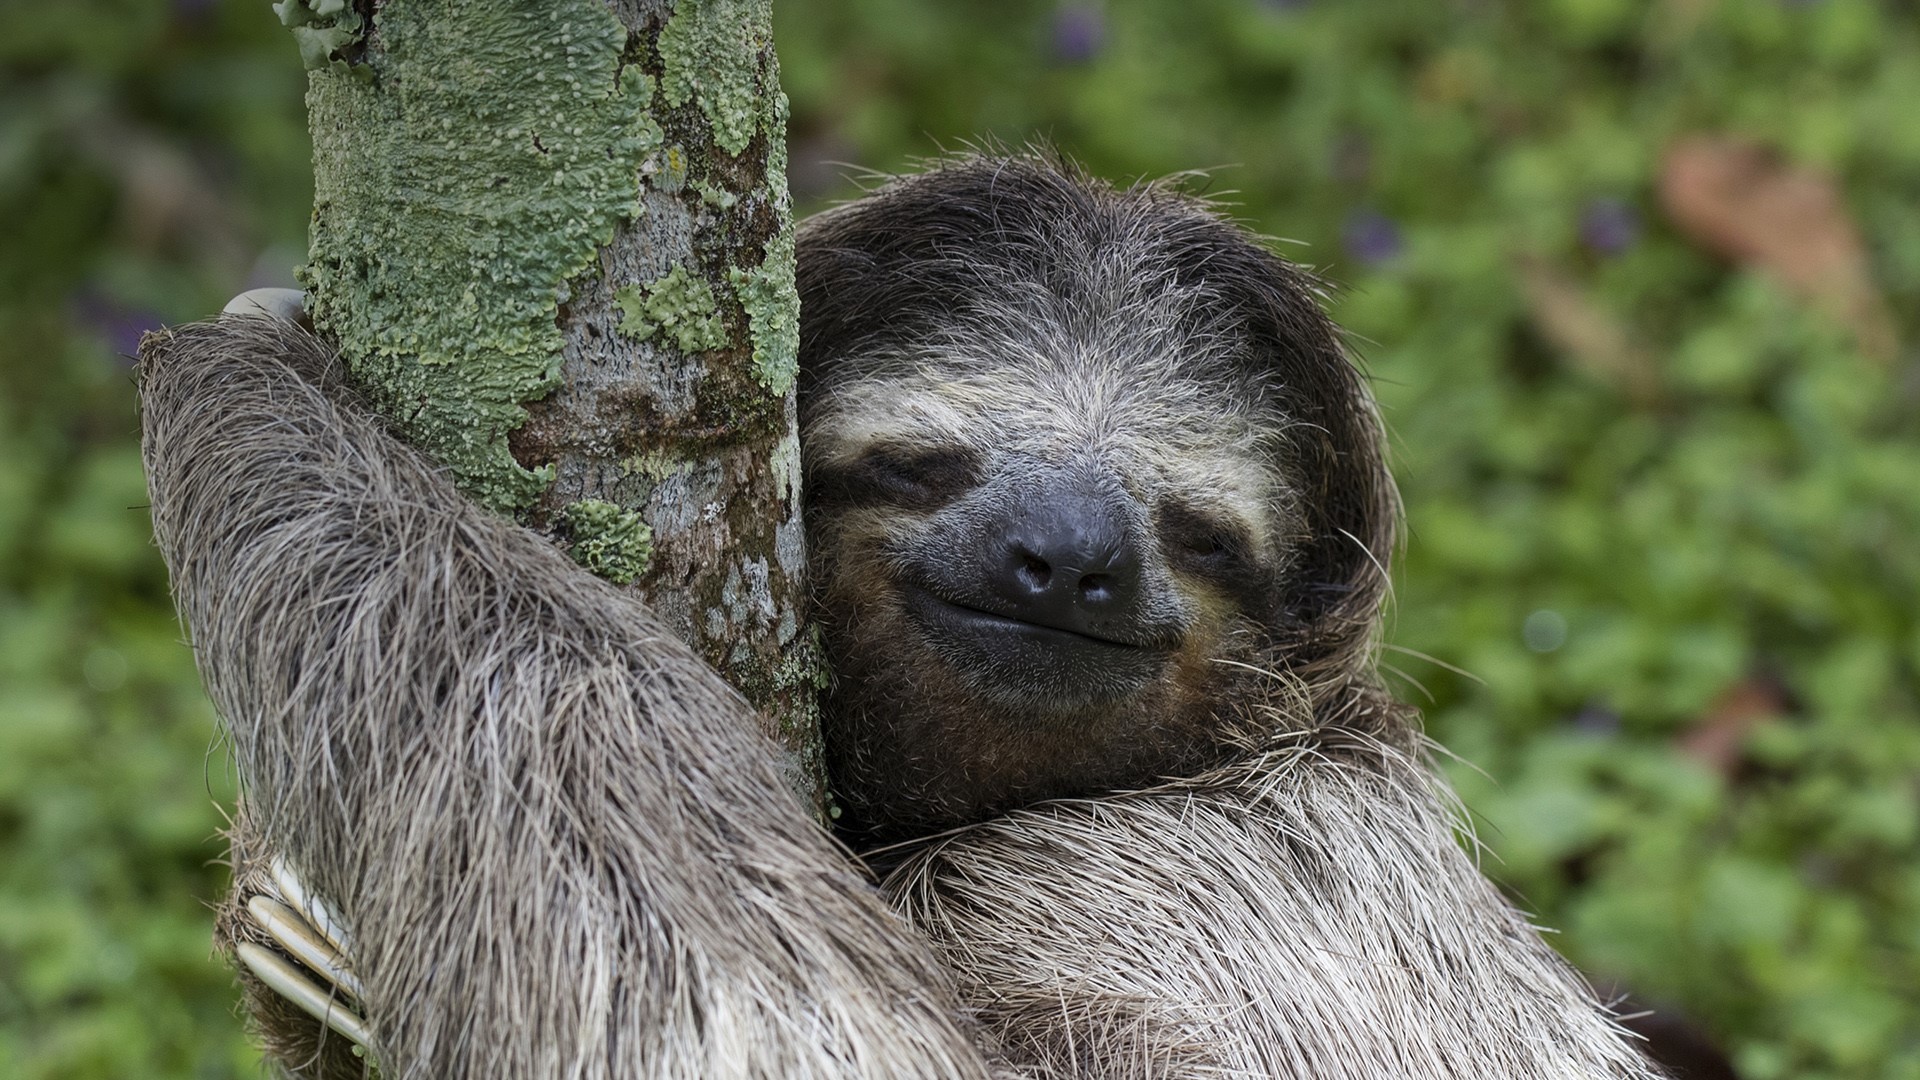 A cute sloth